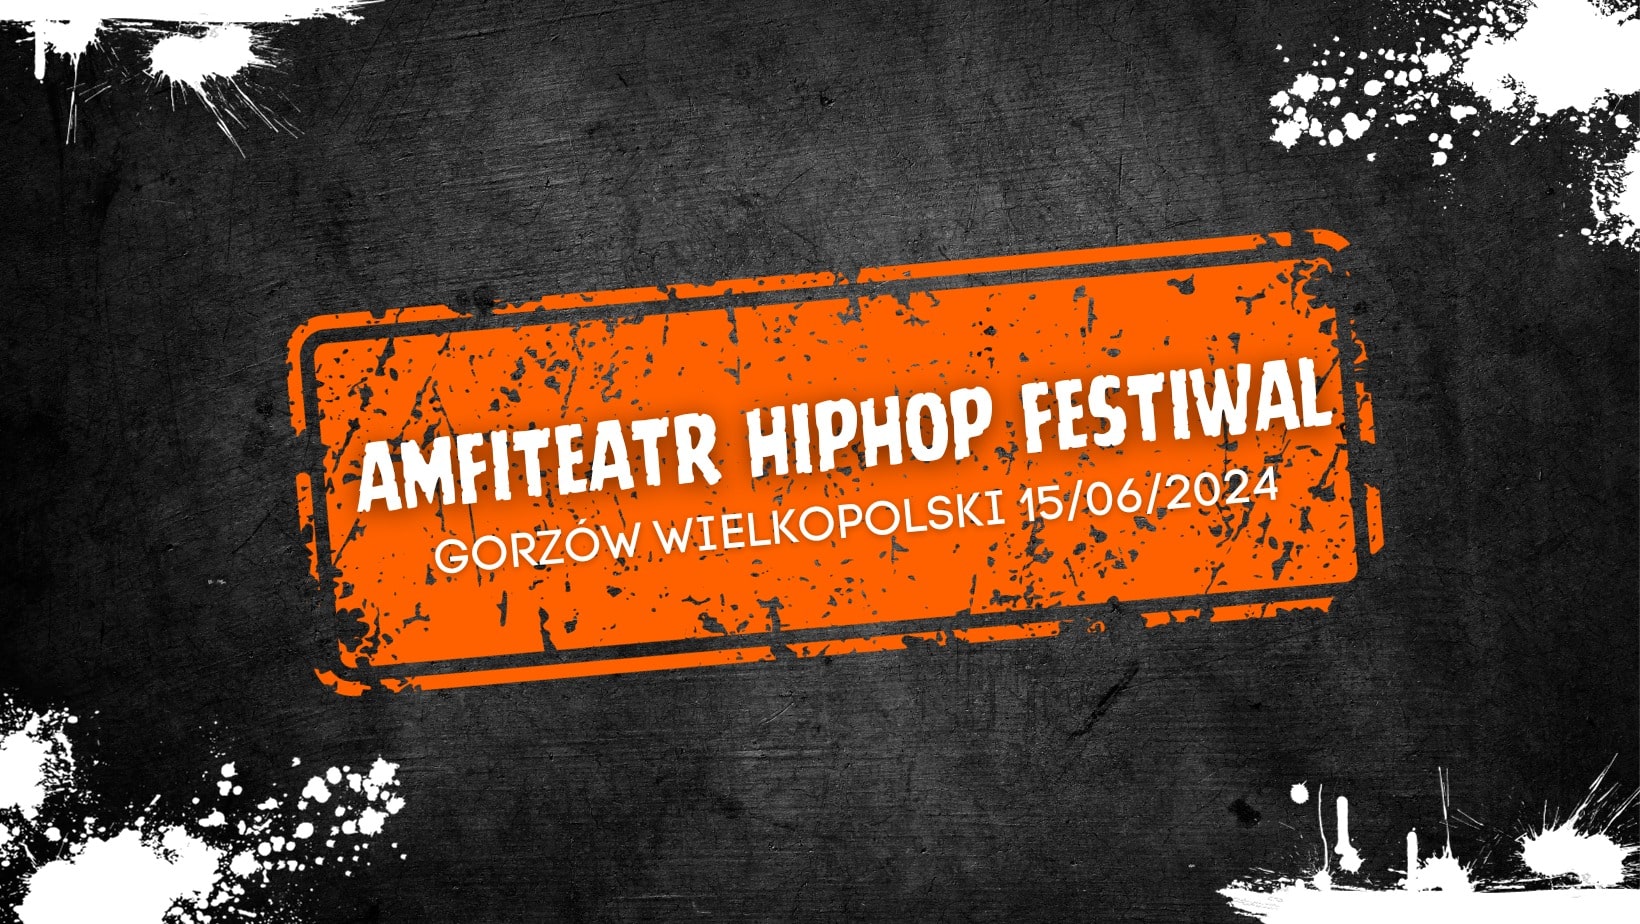 Amfiteatr Hip Hop Festiwal | Gorzów Wielkopolski